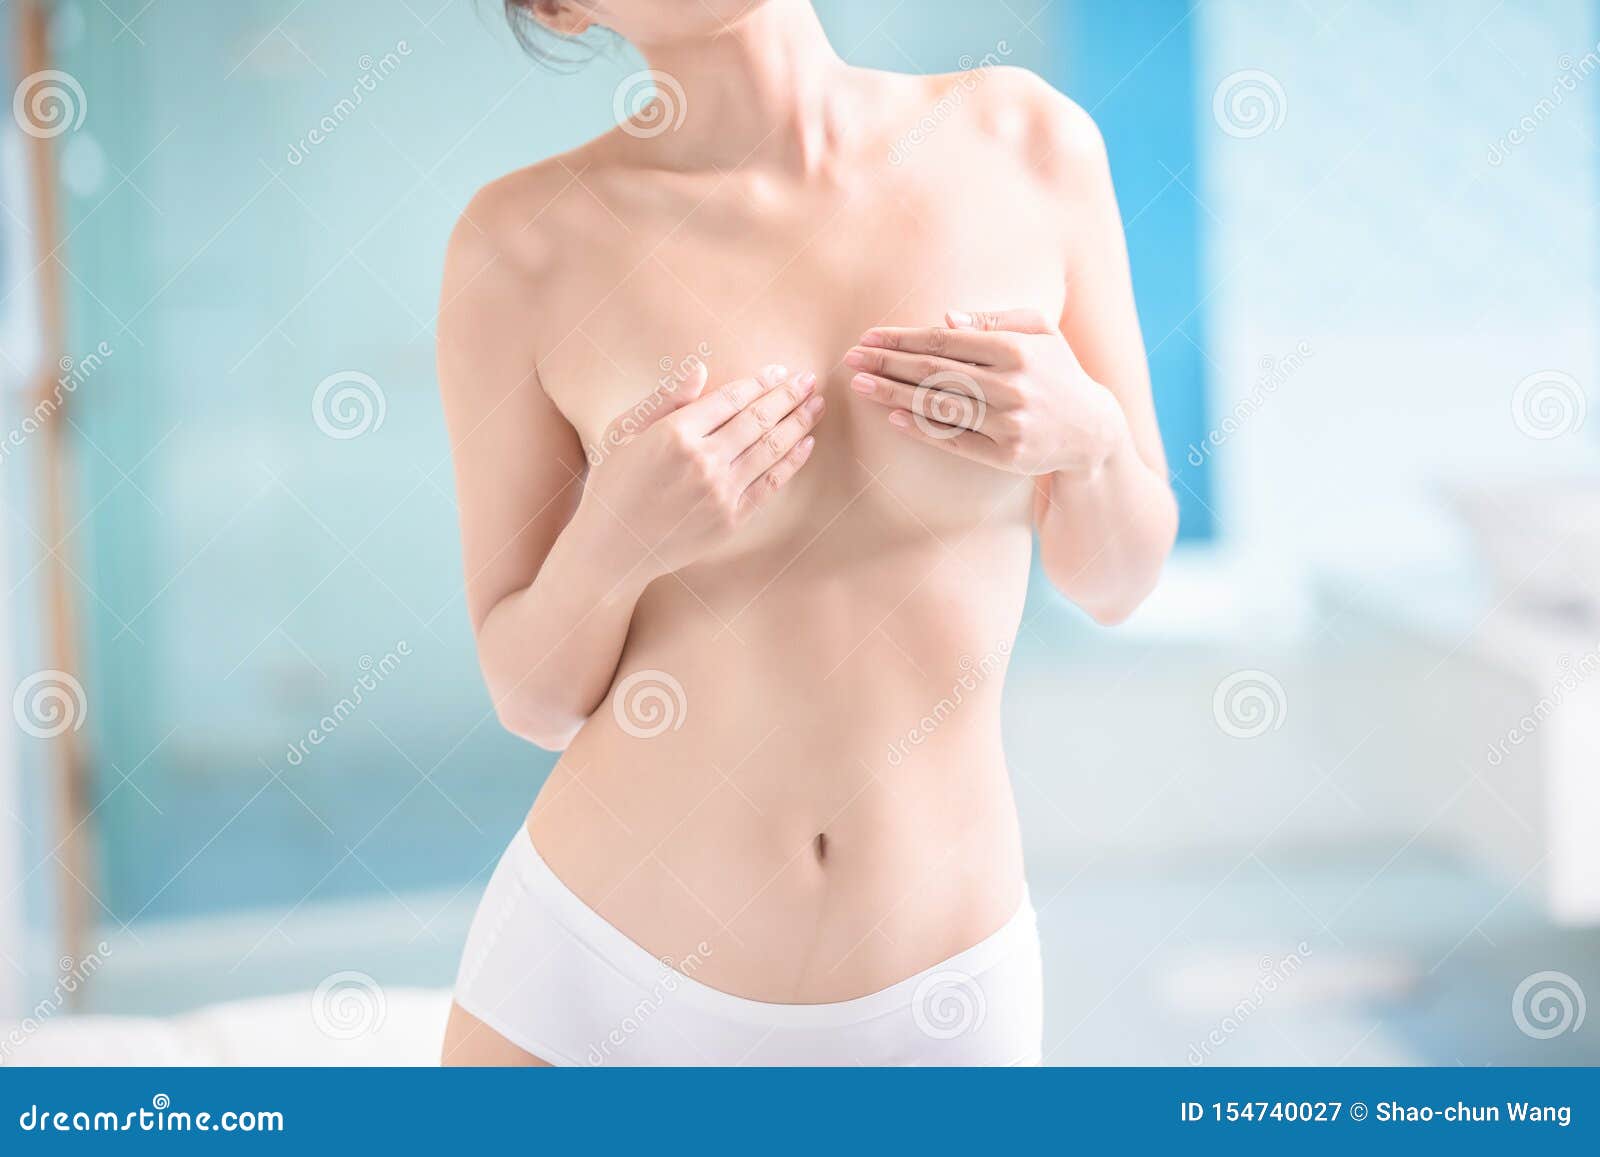 форум жен о груди фото 15